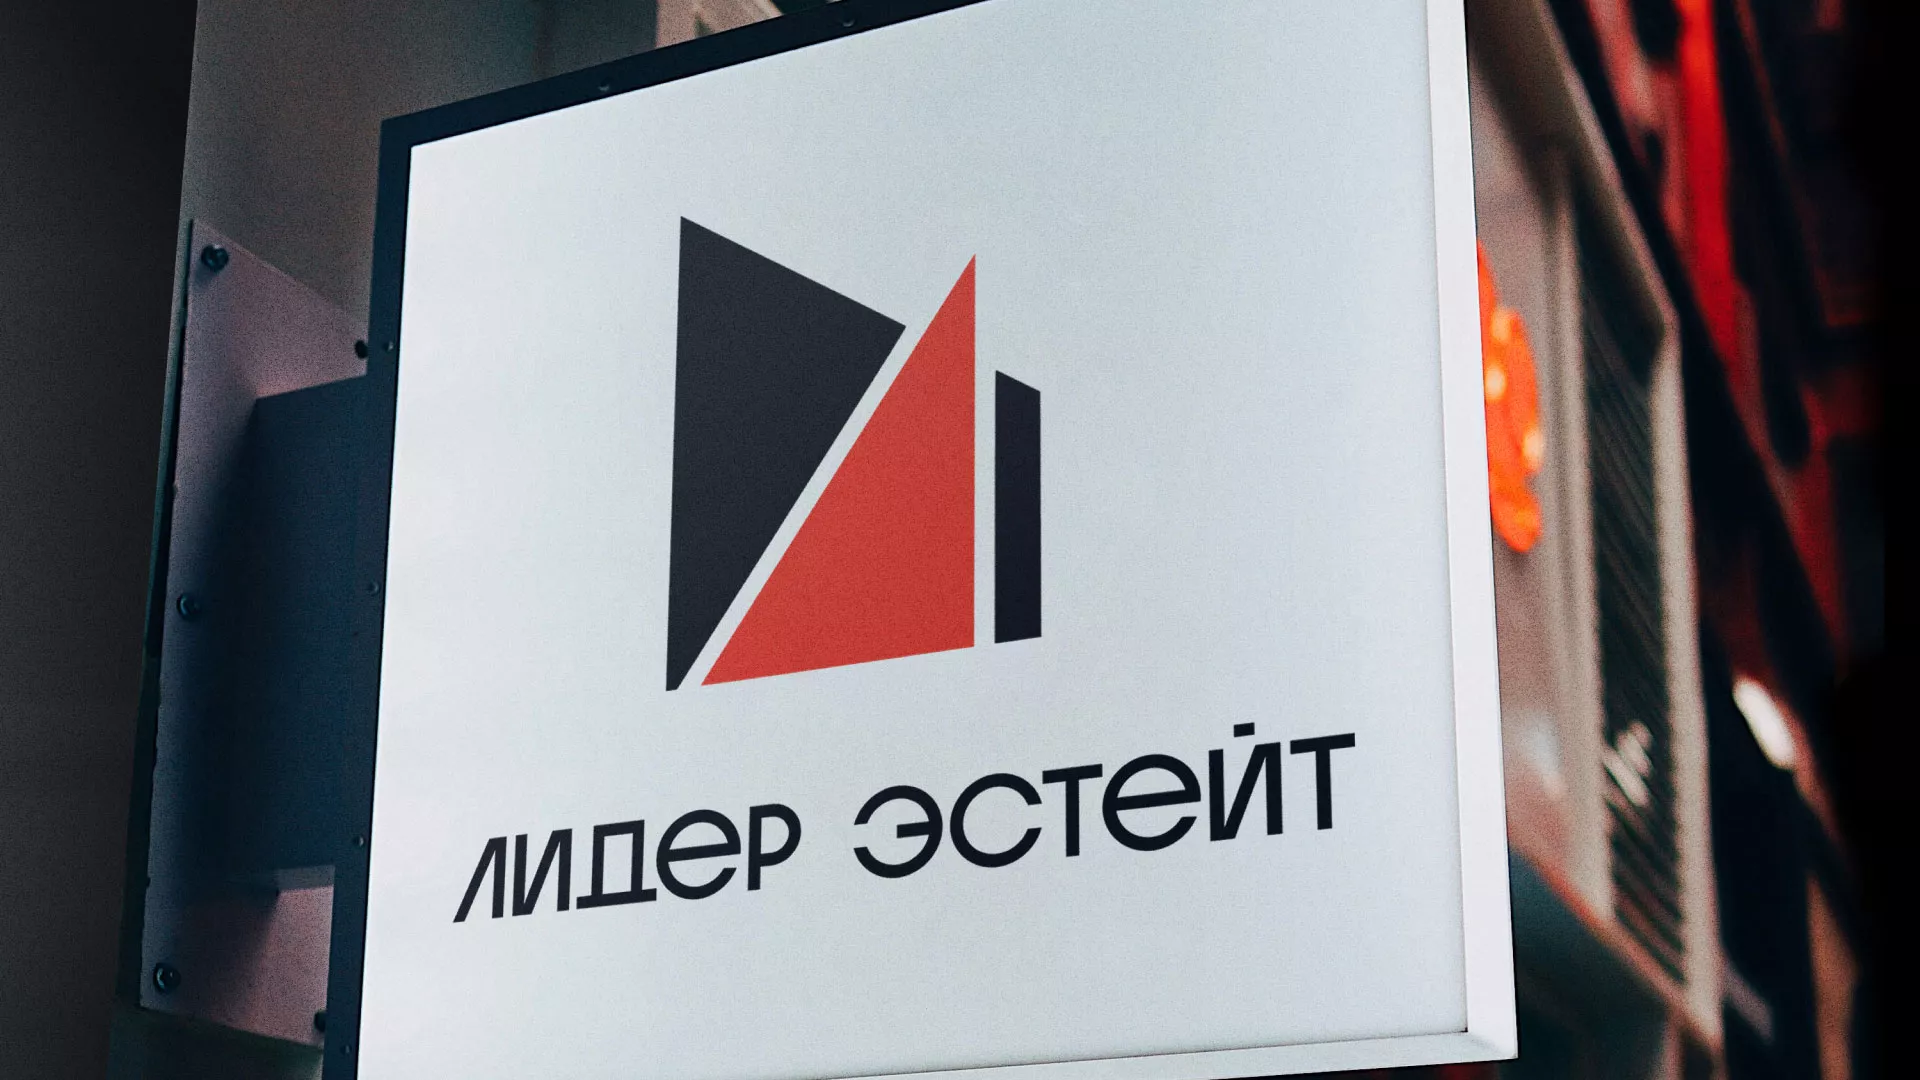 Сделали логотип для агентства недвижимости «Лидер Эстейт» в Орехово-Зуево